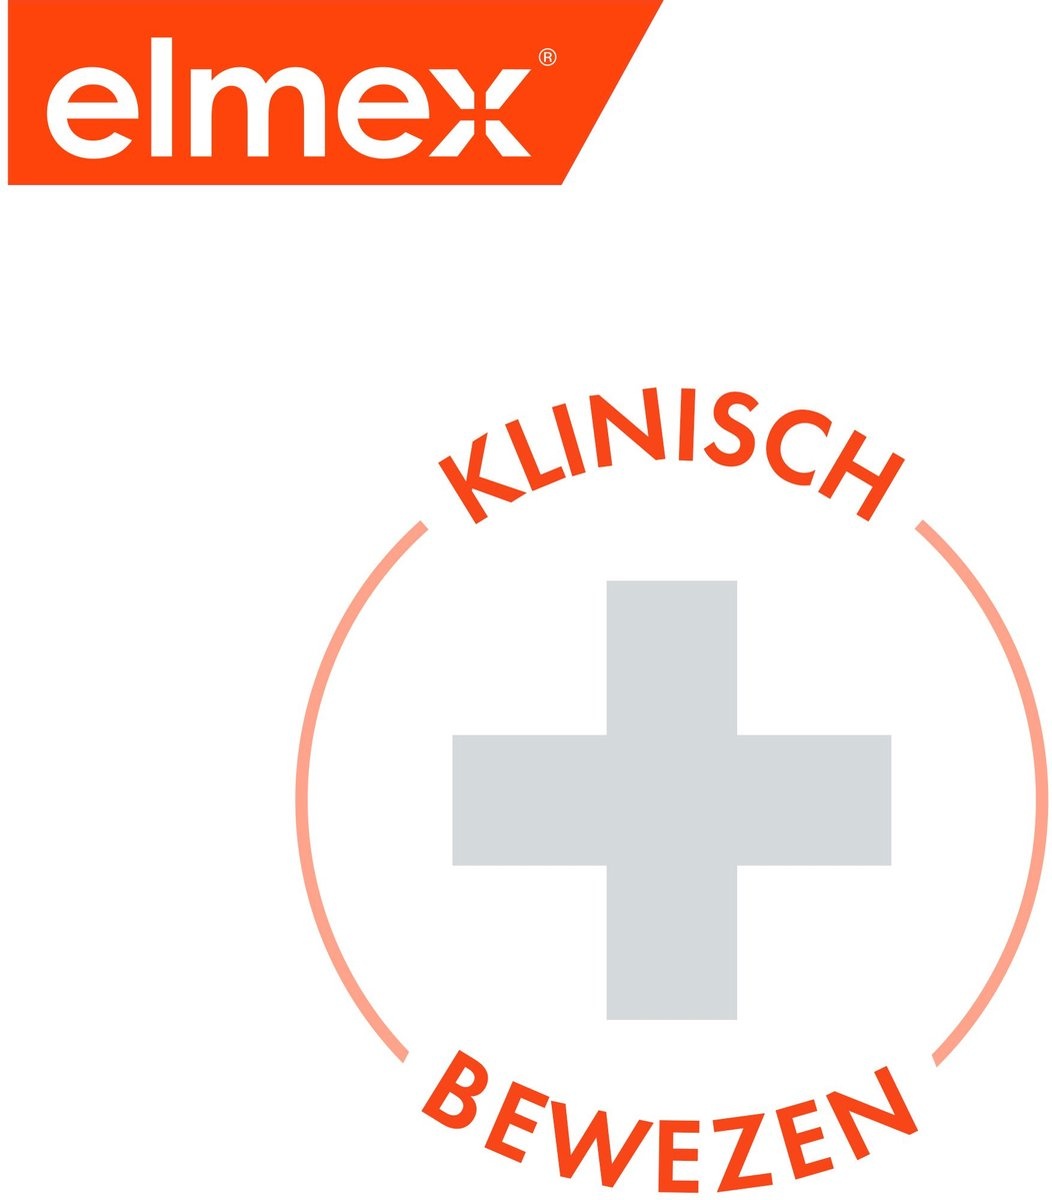 Elmex Anti Caries Zahnpasta 4 x 75 ml - Vorteilspack - Verpackung beschädigt